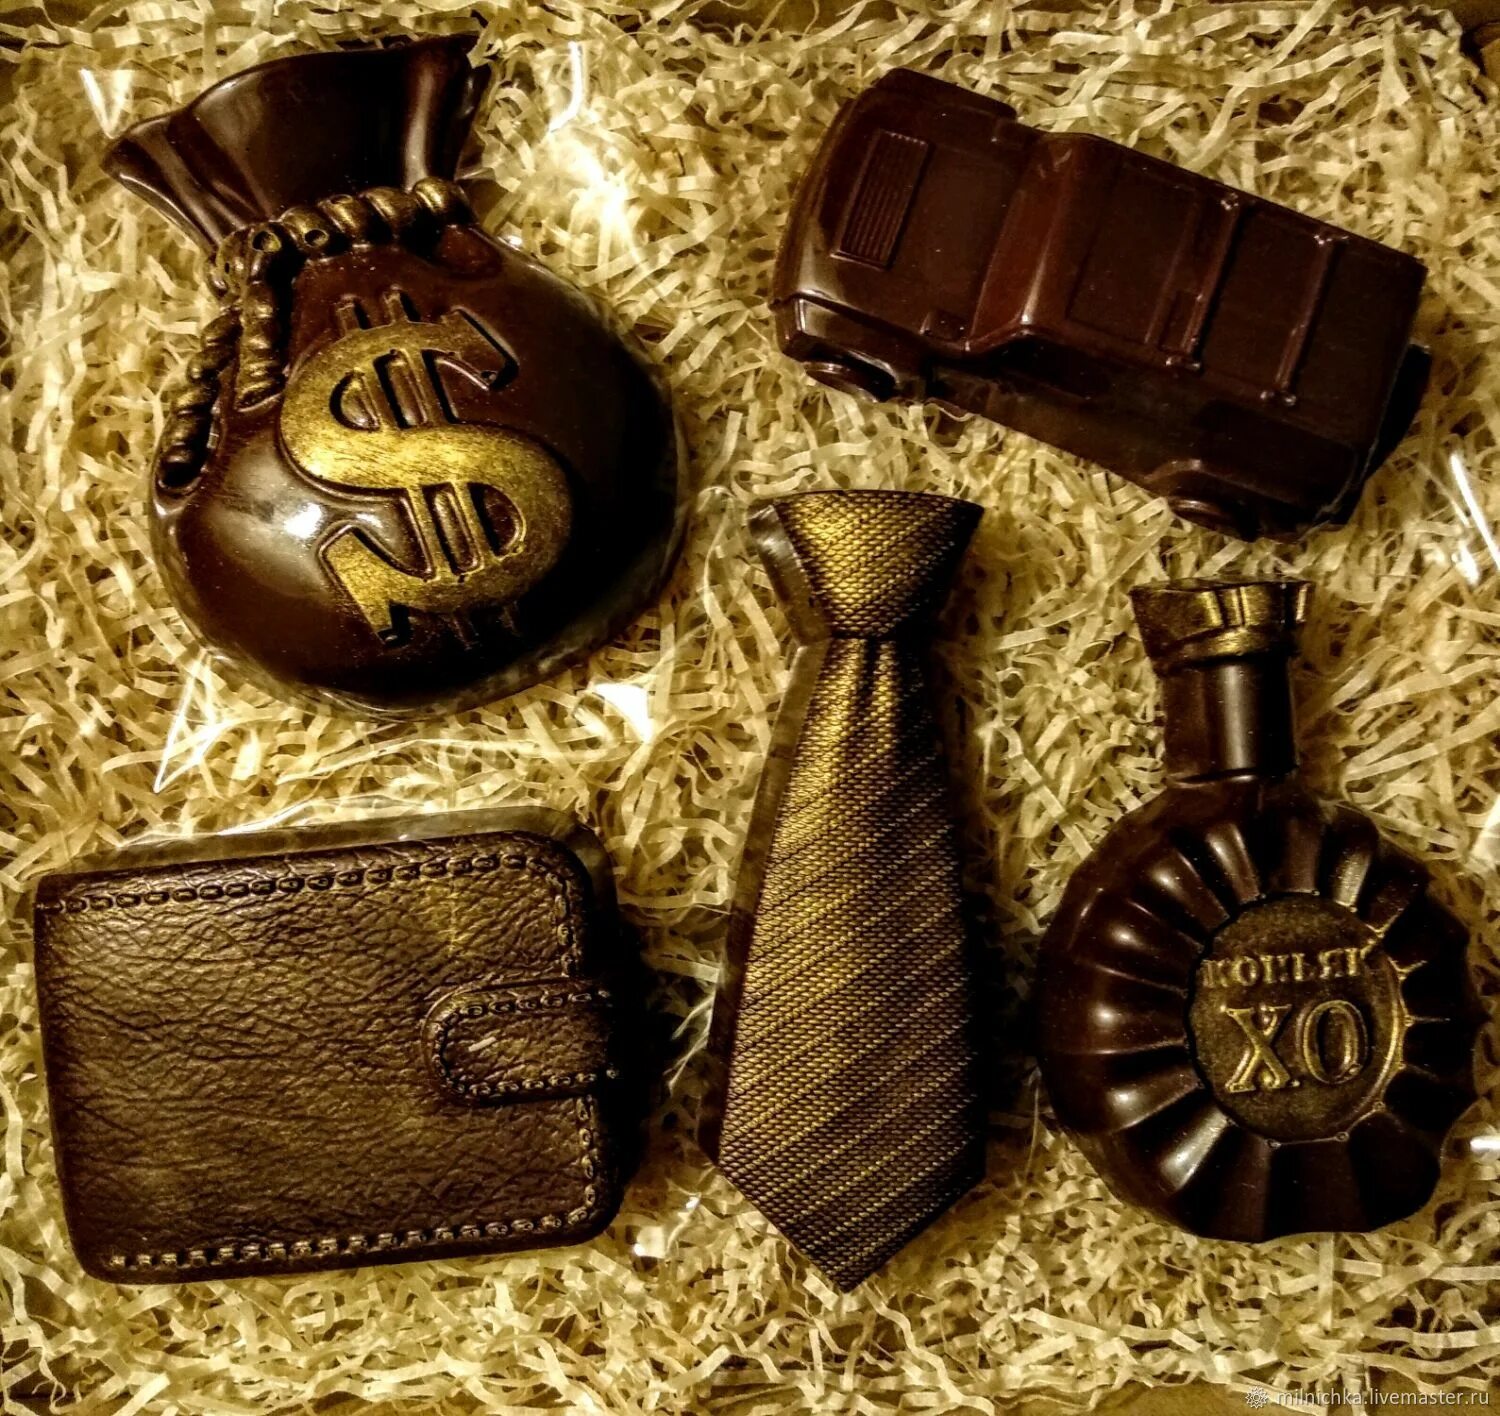 Шоколадный подарок для мужчины. Шоколадные наборы для мужчин. Набор из шоколада для мужчин. Подарки из шоколада для мужчин. Купить шоколад орел